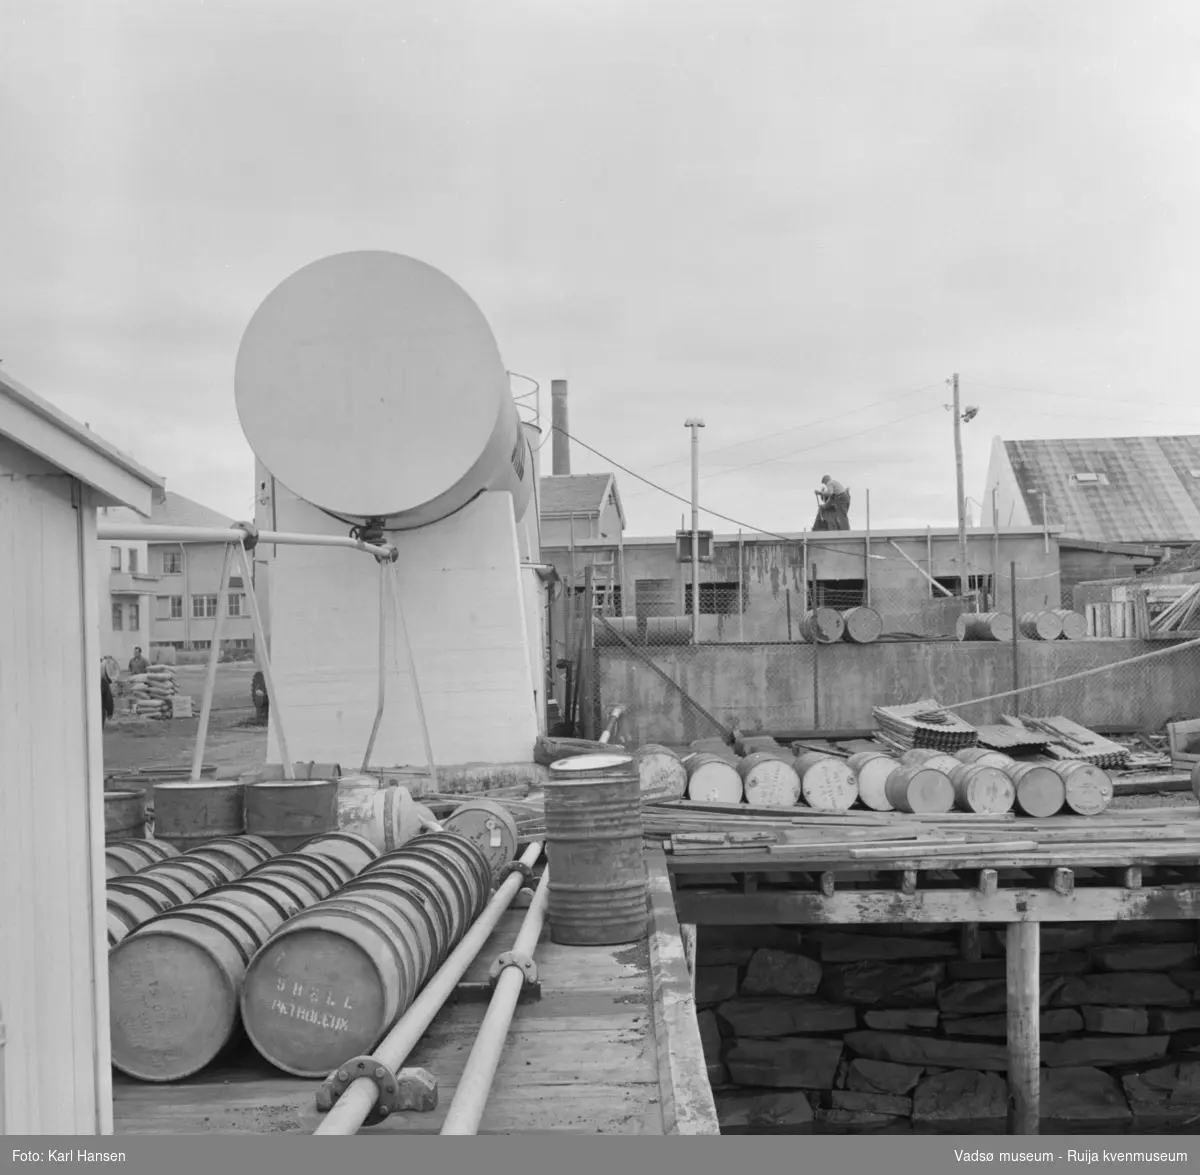 Vadsø sentrum 1959. Shells tankanlegg for drivstoff under bygging. Tønner og bygningsmateriale lagret på kaia. Til venstre i bildet ser vi litt av  H.F.Esbensens forretningsbygg og deler av Telegrafen. Midt i bildet skimtes taket til Meieriet og pipa.